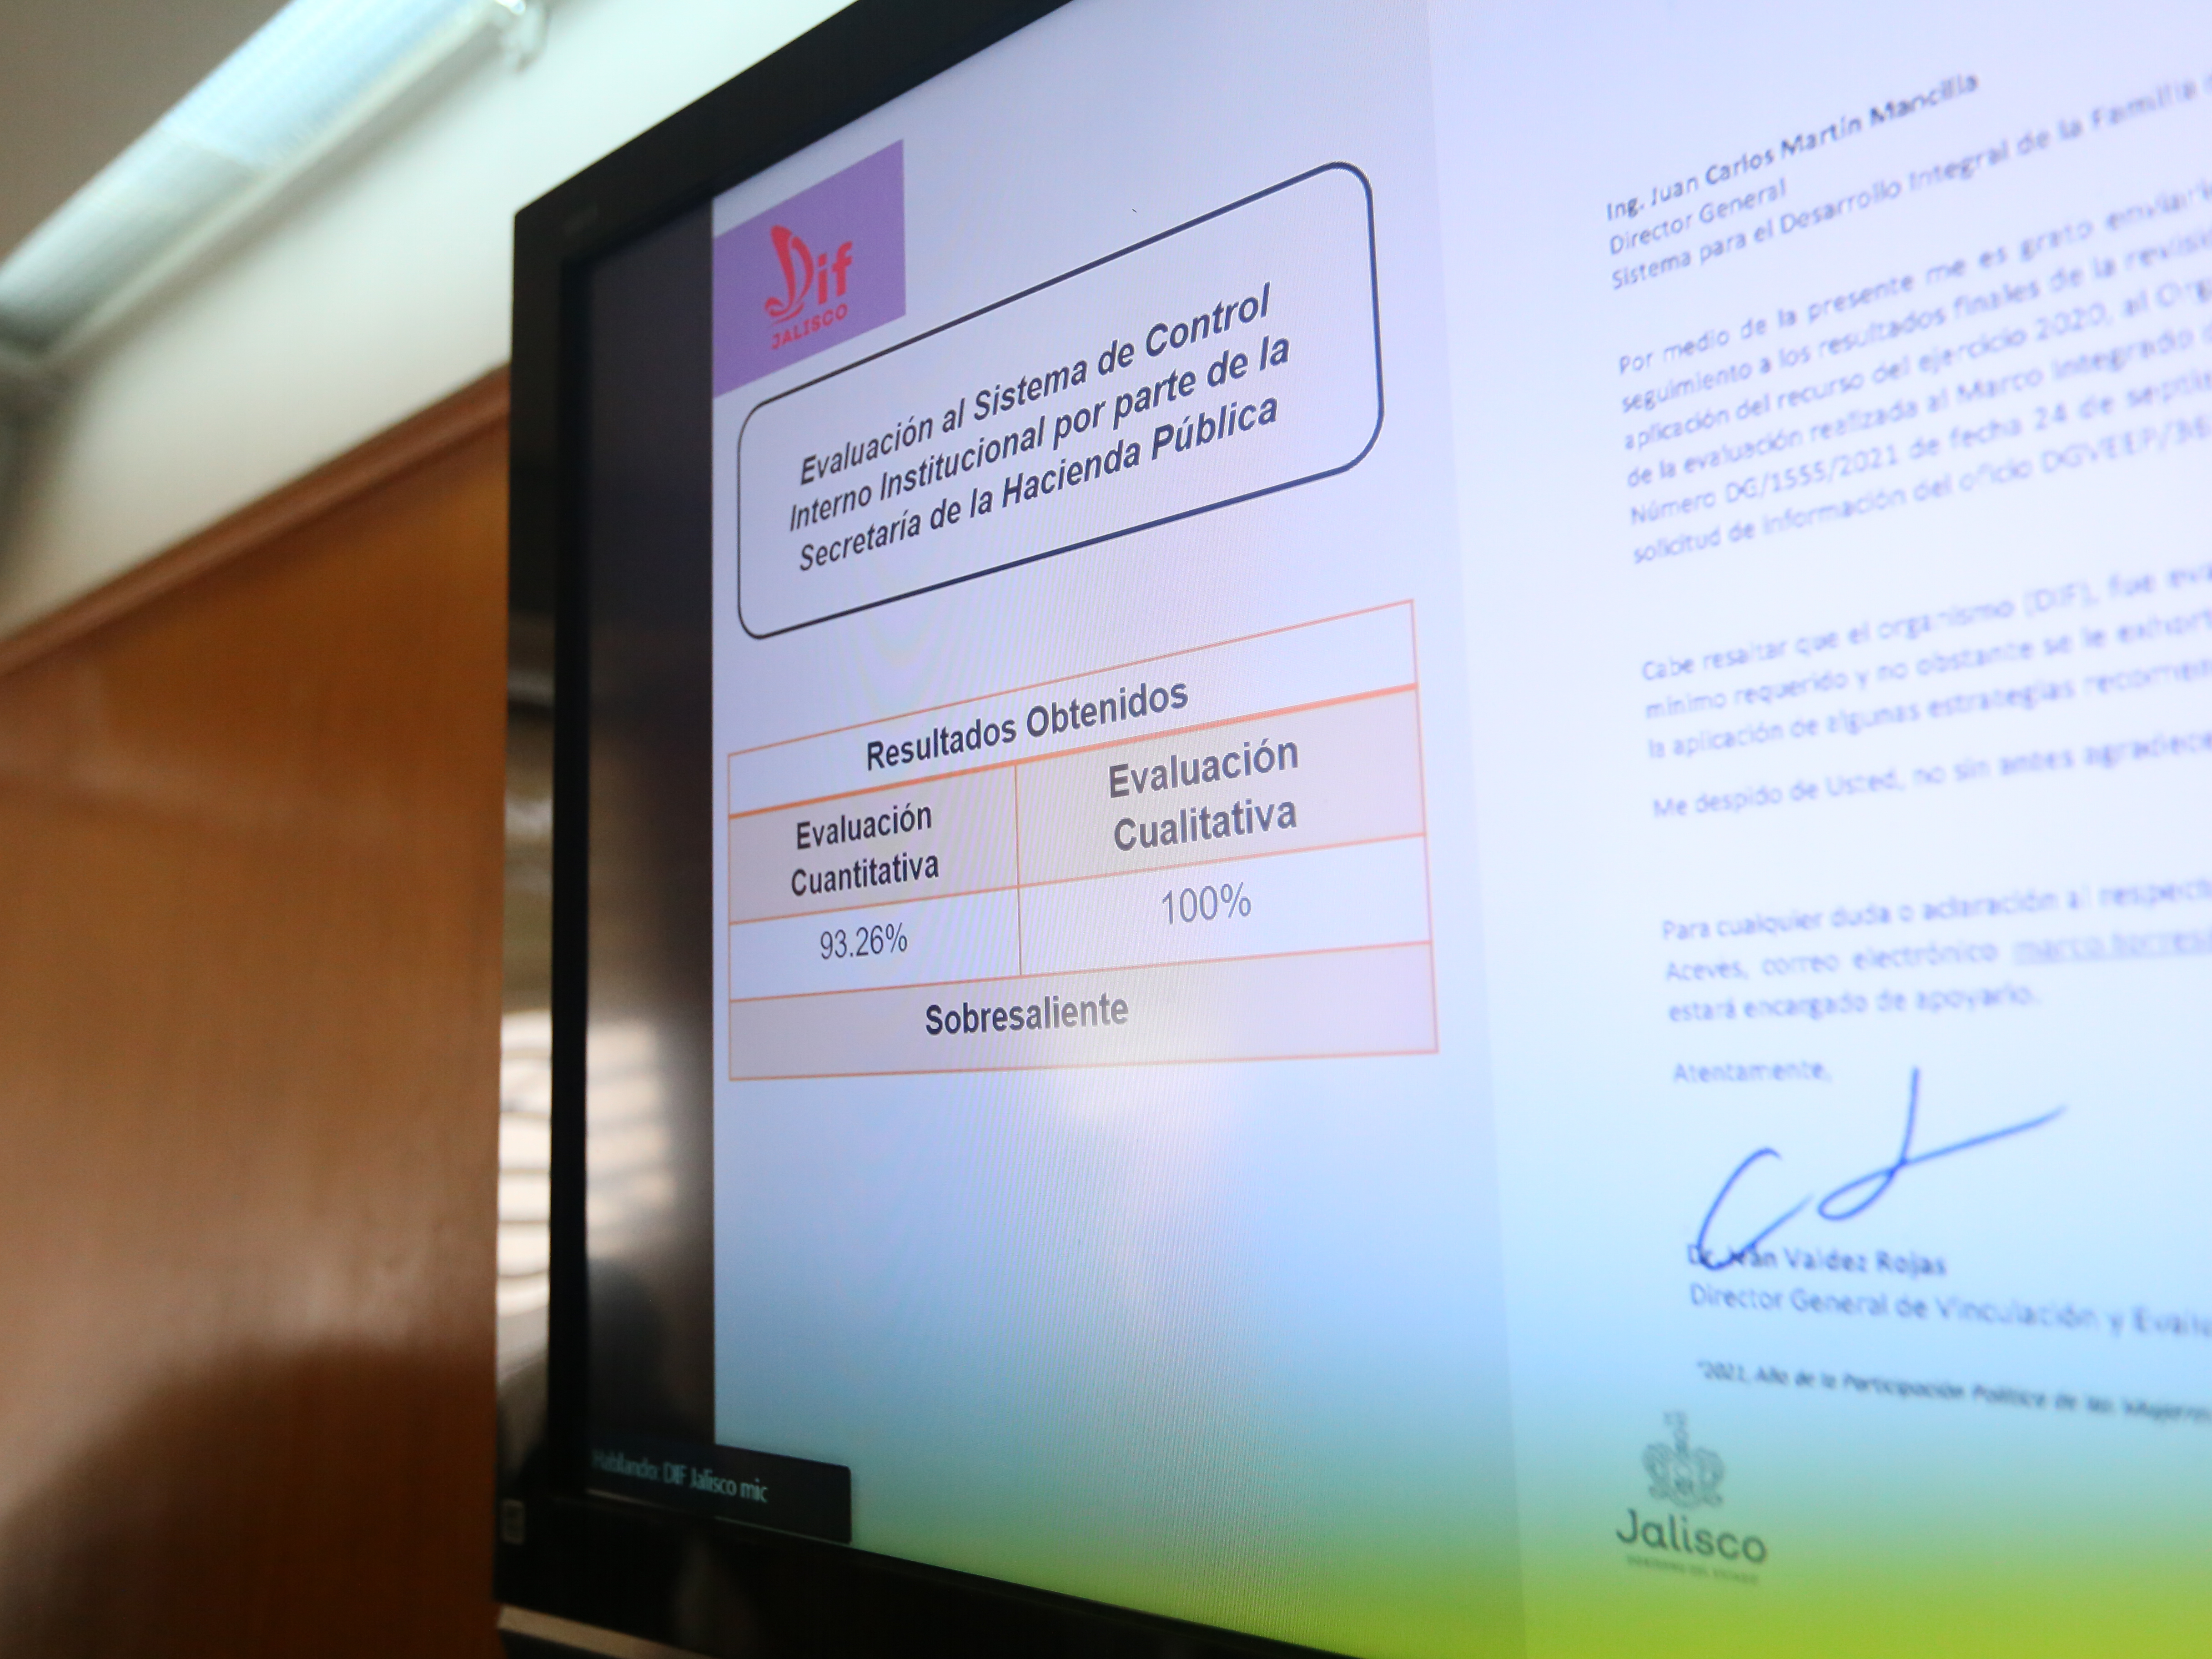 El desempeño del Sistema DIF Jalisco en materia de Control Interno recibió evaluación como "Sobresaliente".